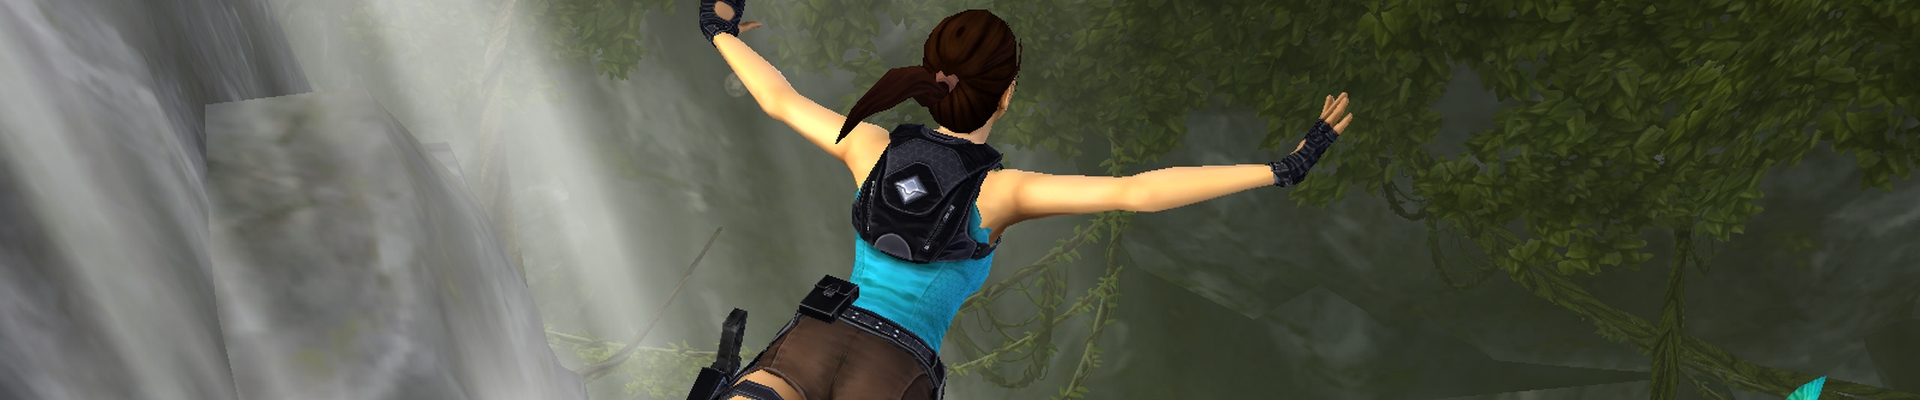 Image de l'article LCRR – Lara Croft: Relic Run, disponible partout en France !